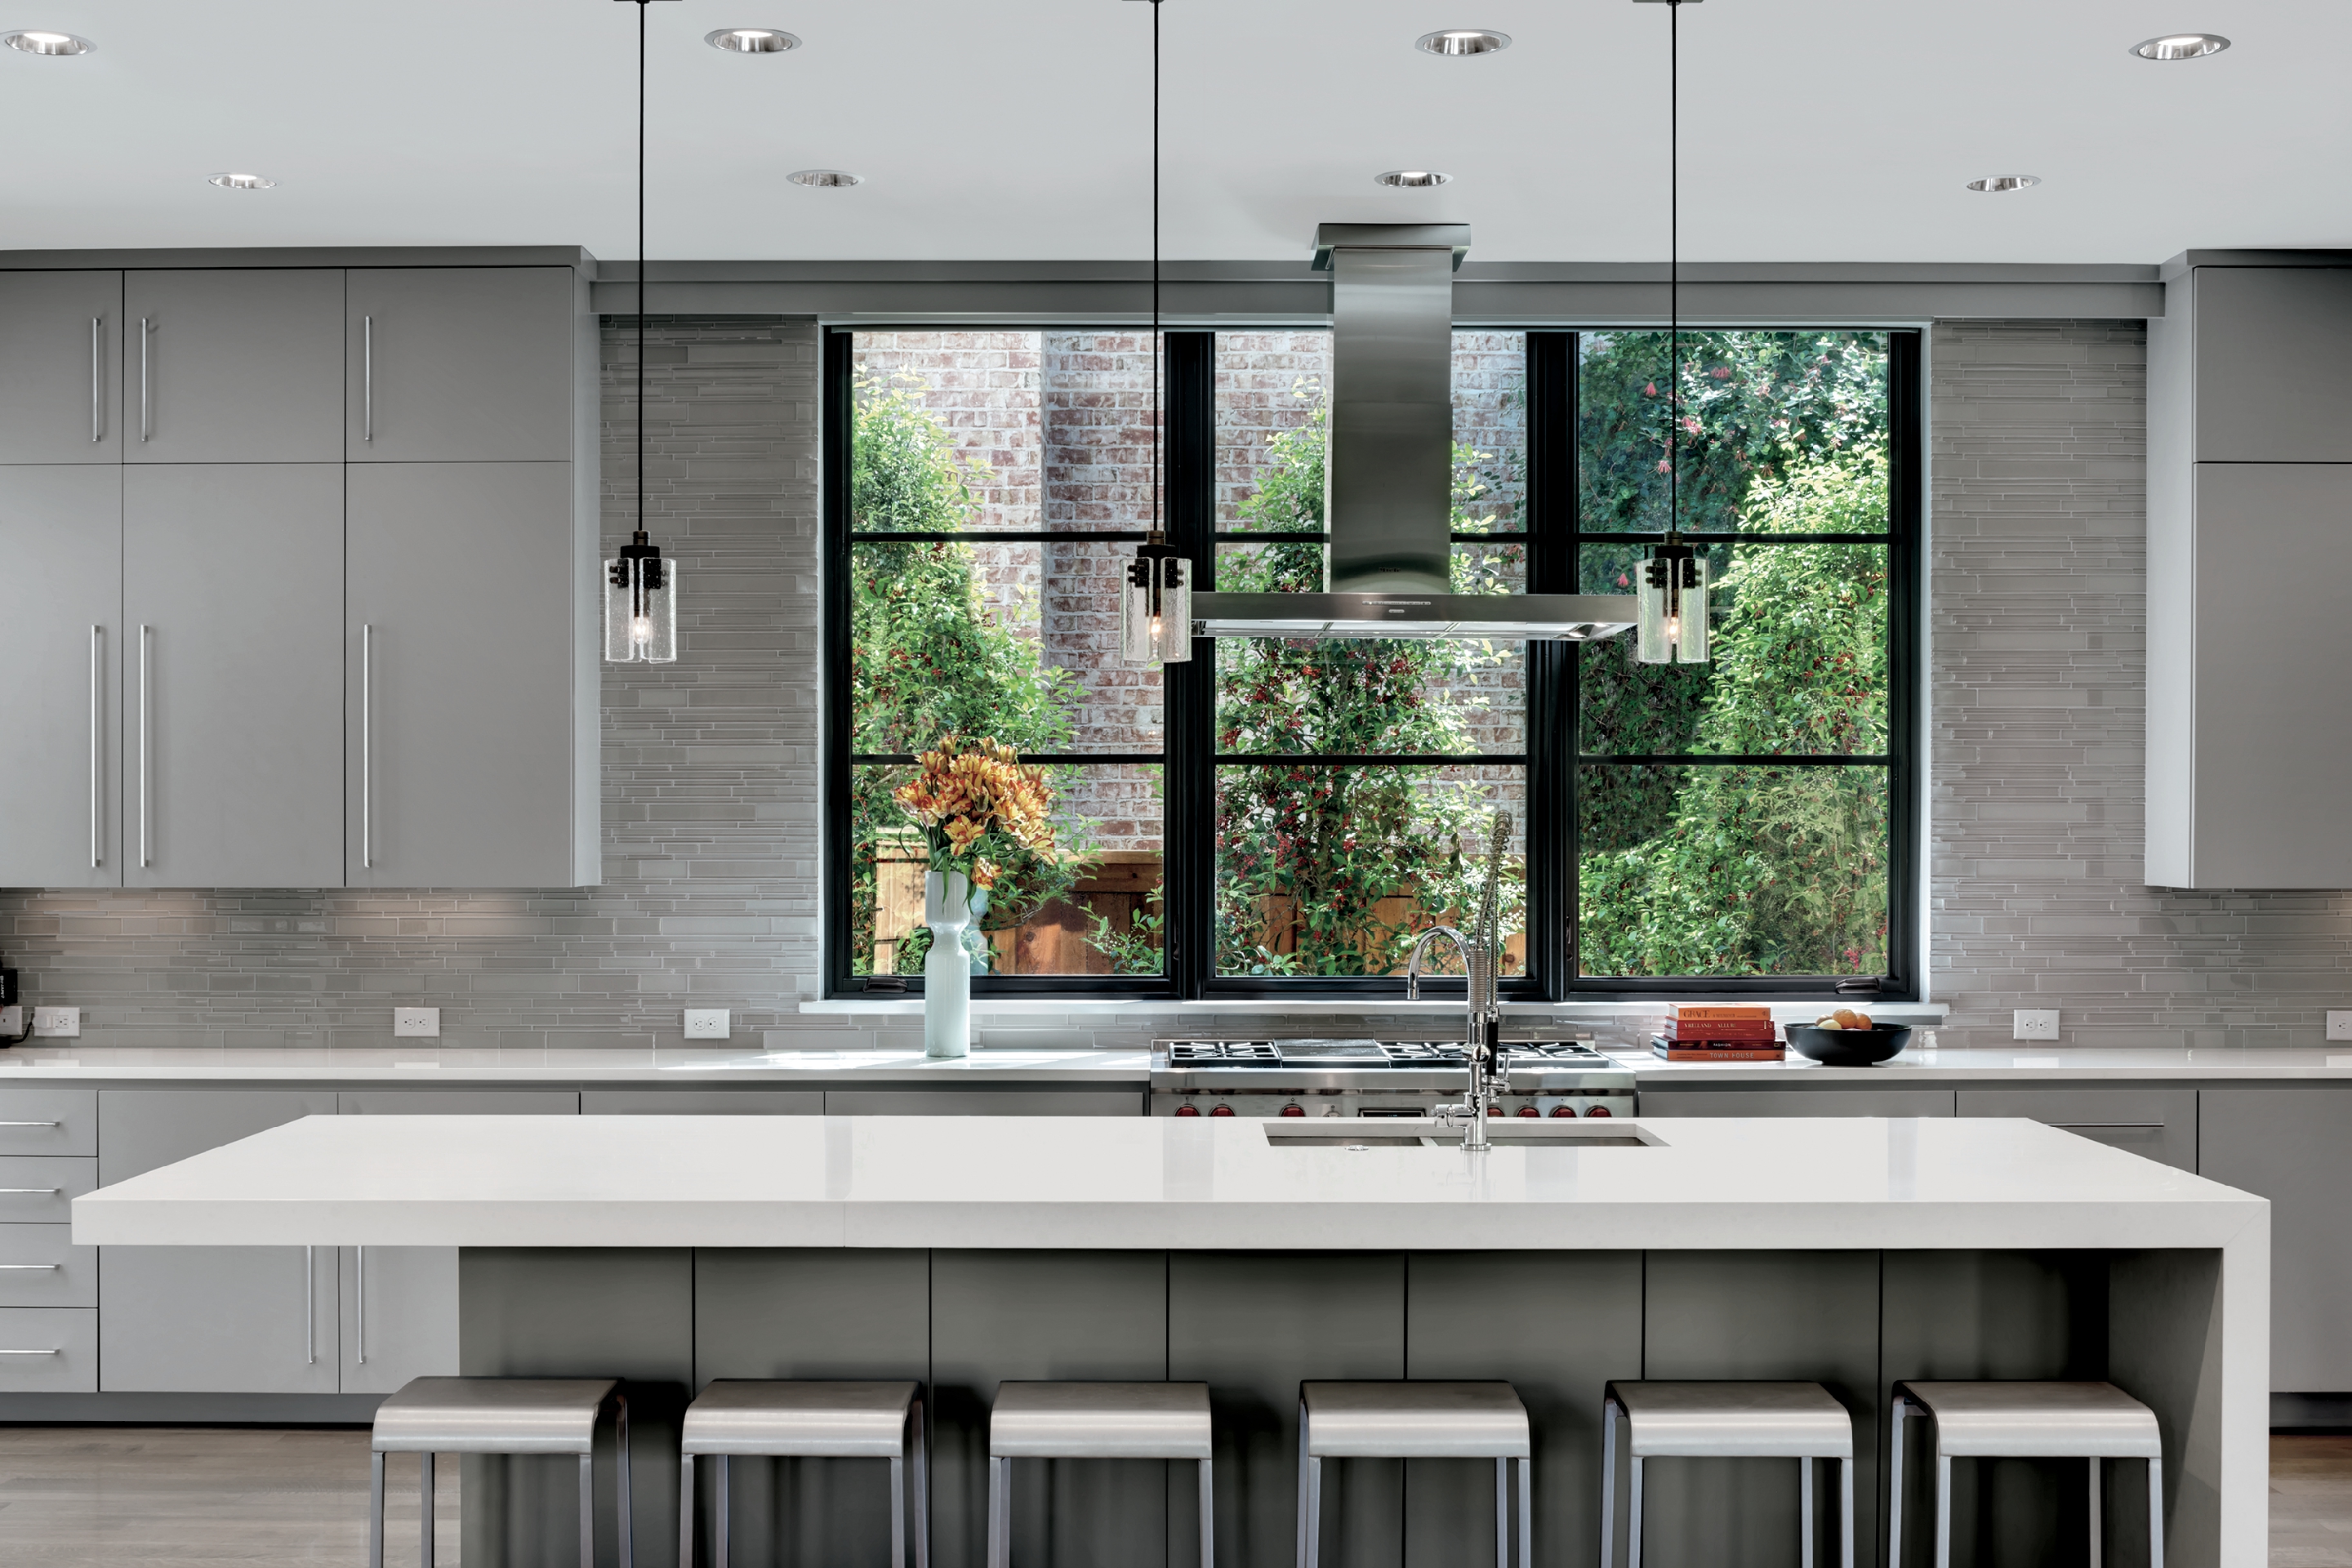 Marvin windows installed in modern kitchen